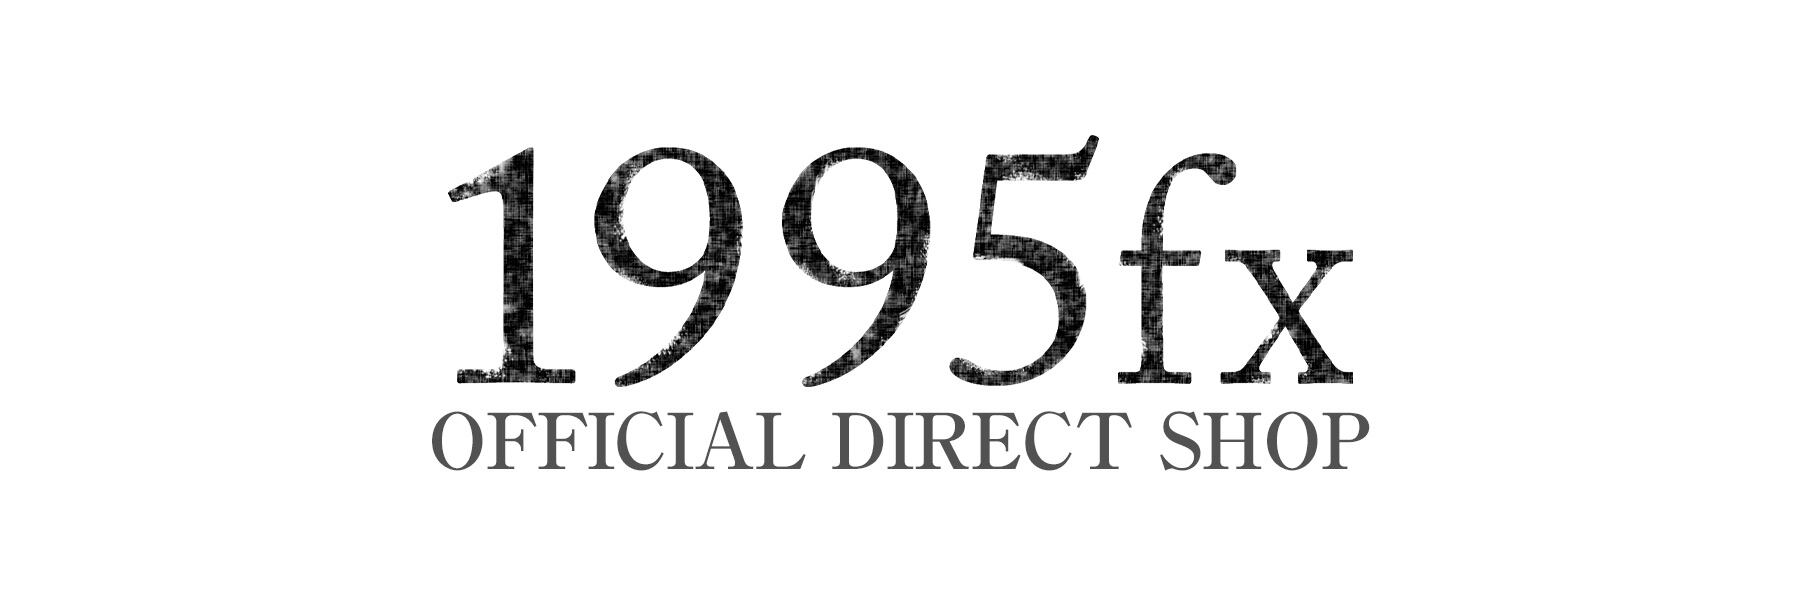 Stomach ache | 1995fx official direct shop